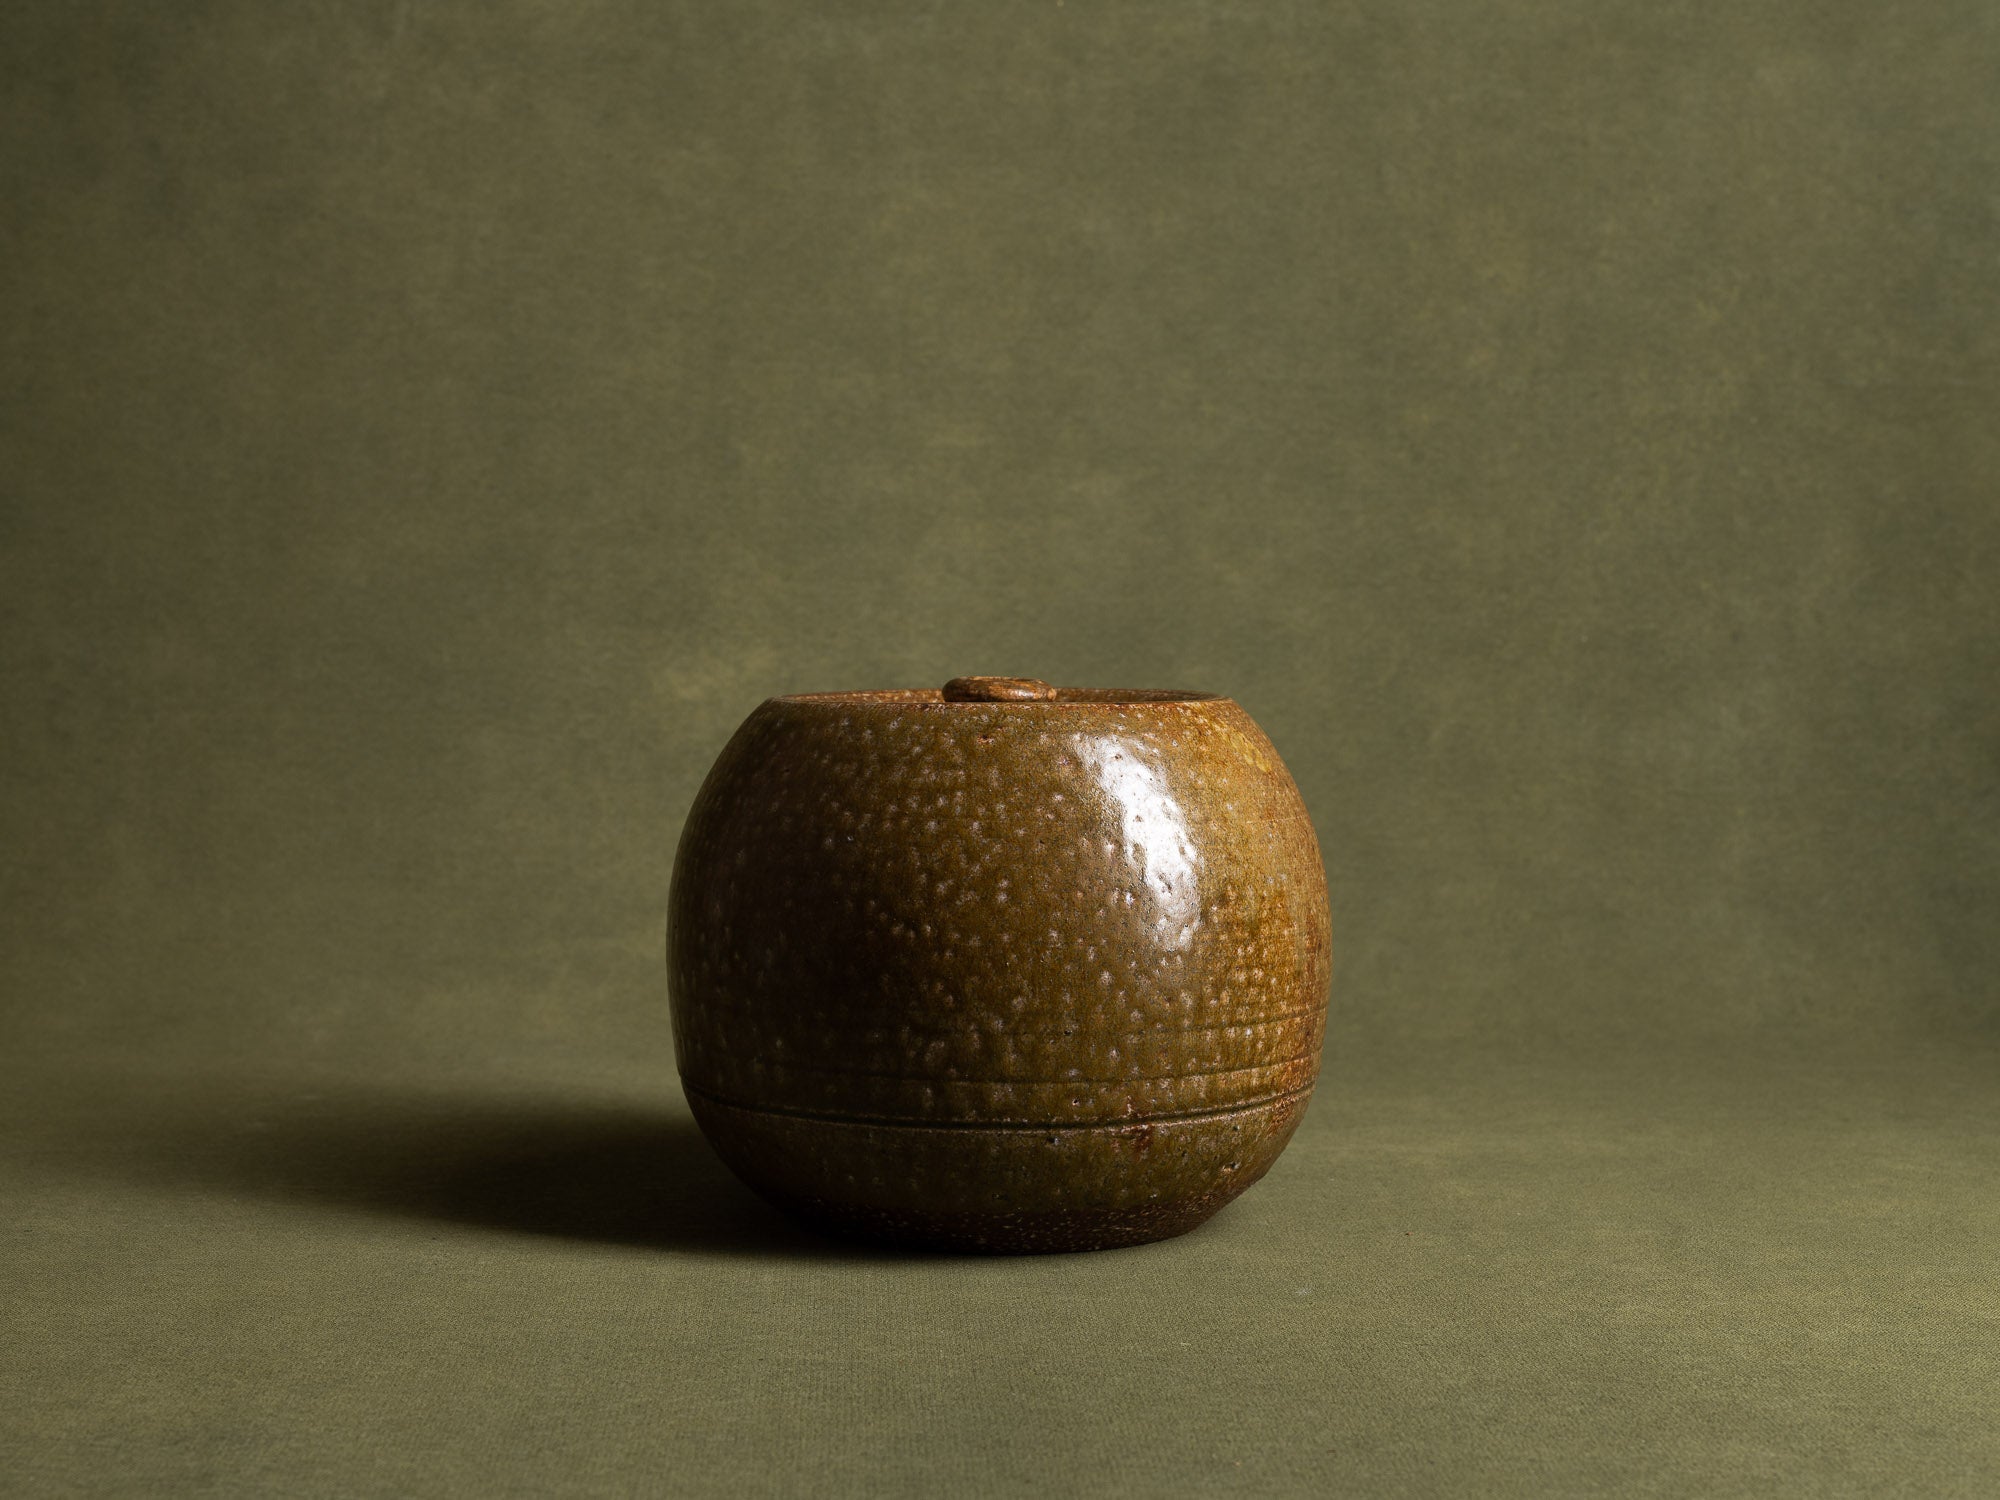 Mizusashi, pot couvert à eau pour la cérémonie du thé, Japon (ére Shōwa)..Seto ware lidded pot, Mizusashi for tea ceremony, Japan (Shōwa Era)